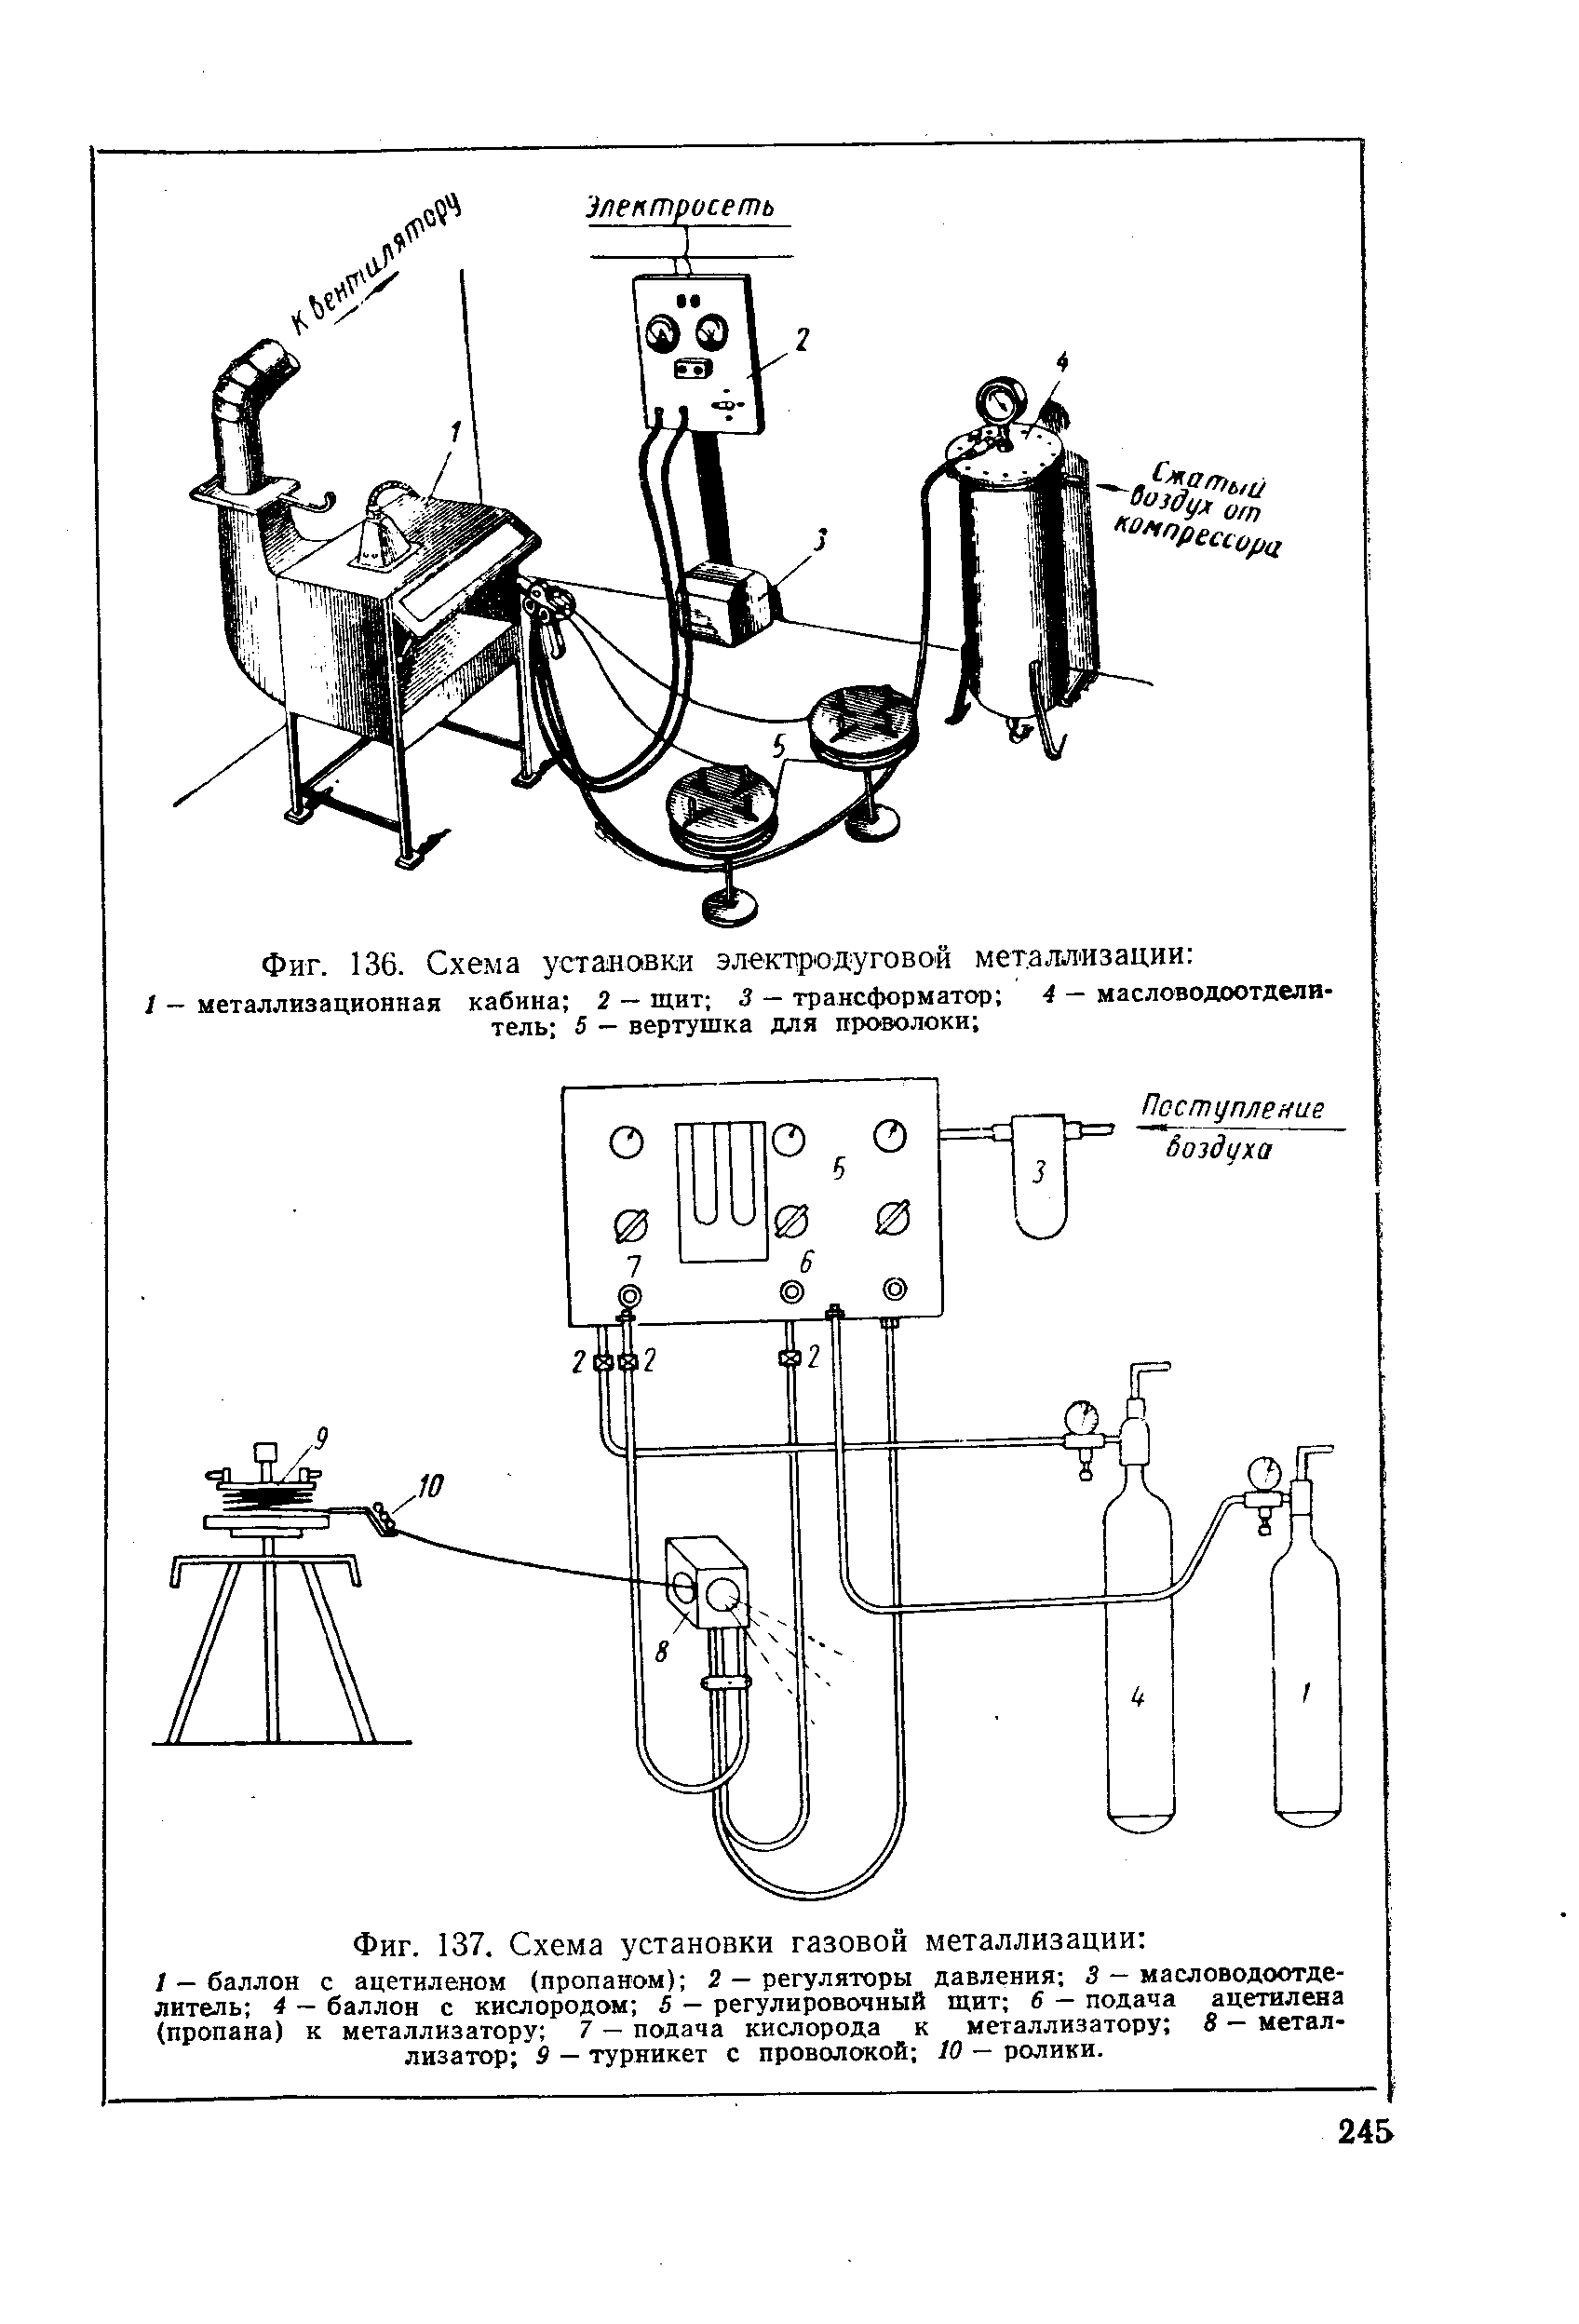 Фиг. 137. Схема установки газовой металлизации 
